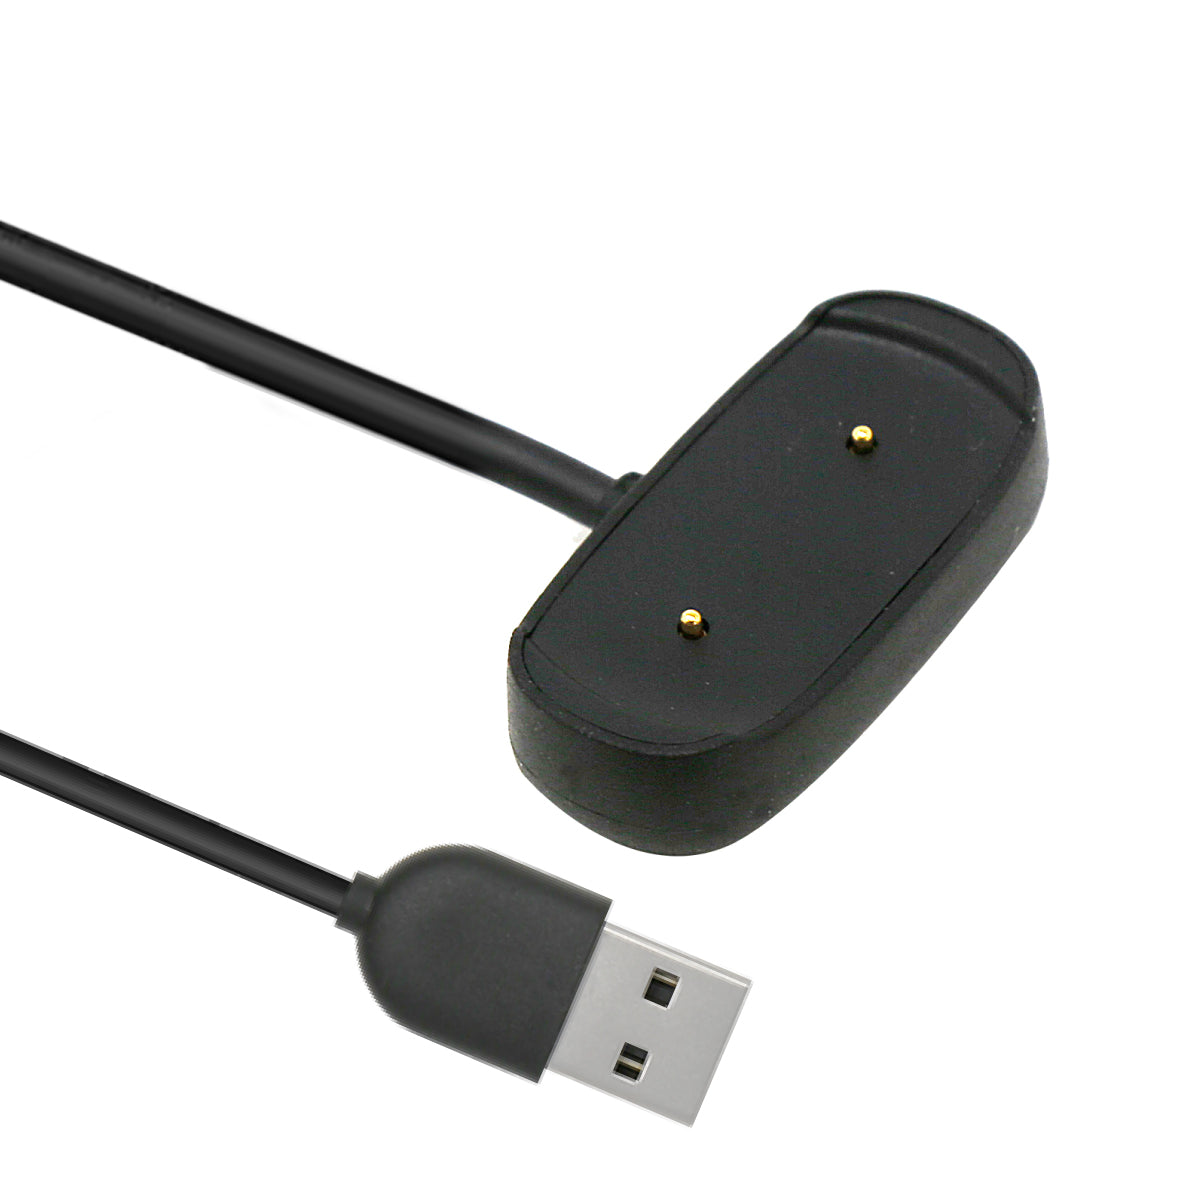 Amazfit 純正品 スマートウォッチ専用 マグネット式 USB 充電器 Bip 3/Bip 3 Pro/Bip U/Bip U Pro/